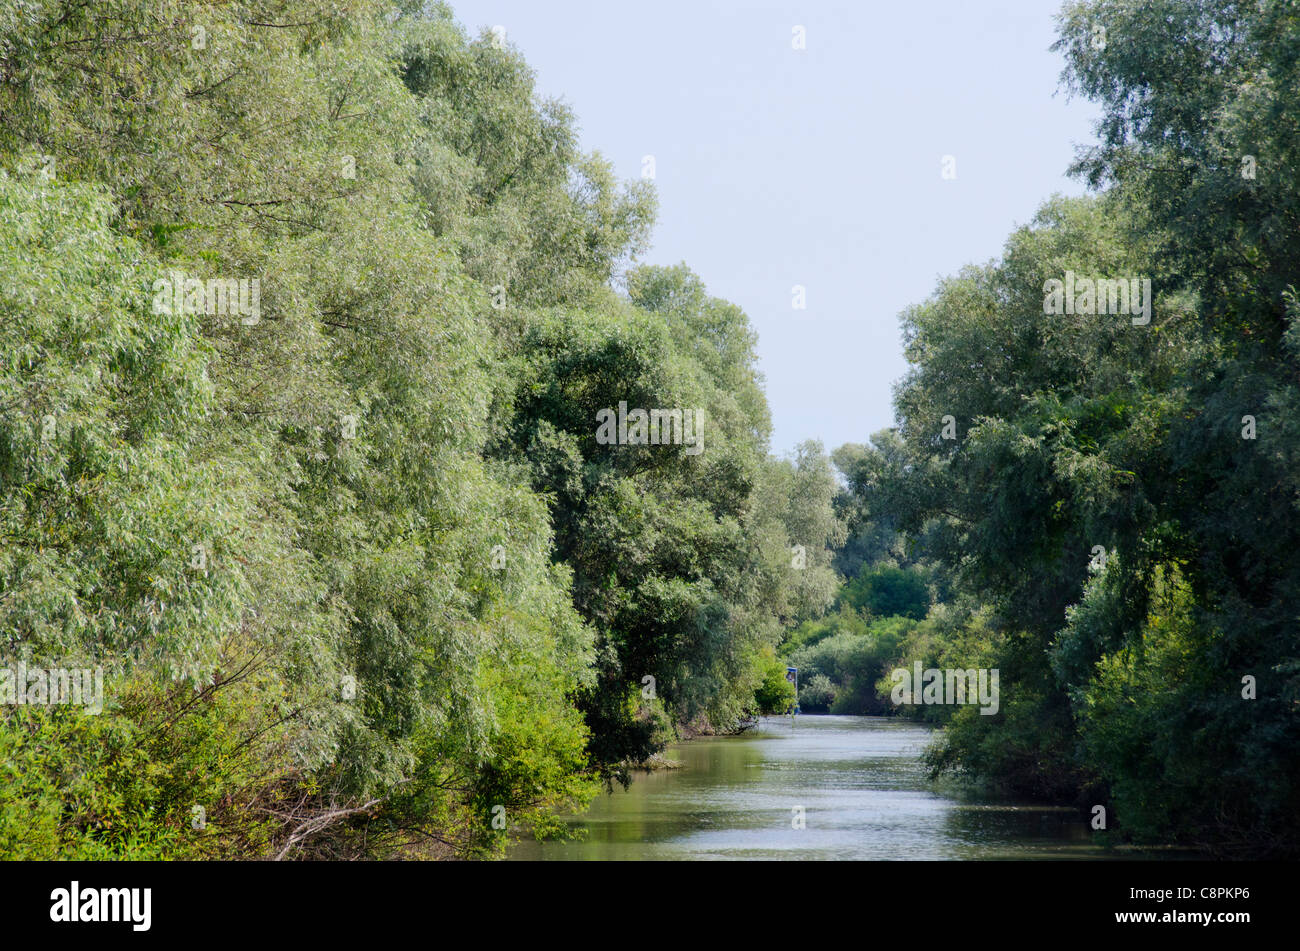 Roumanie, Dobrudgea, Tulcea, région du Delta du Danube. Sfantu Gheorghe channel bordée de saules d'argent (alias wild willow) arbres. Banque D'Images